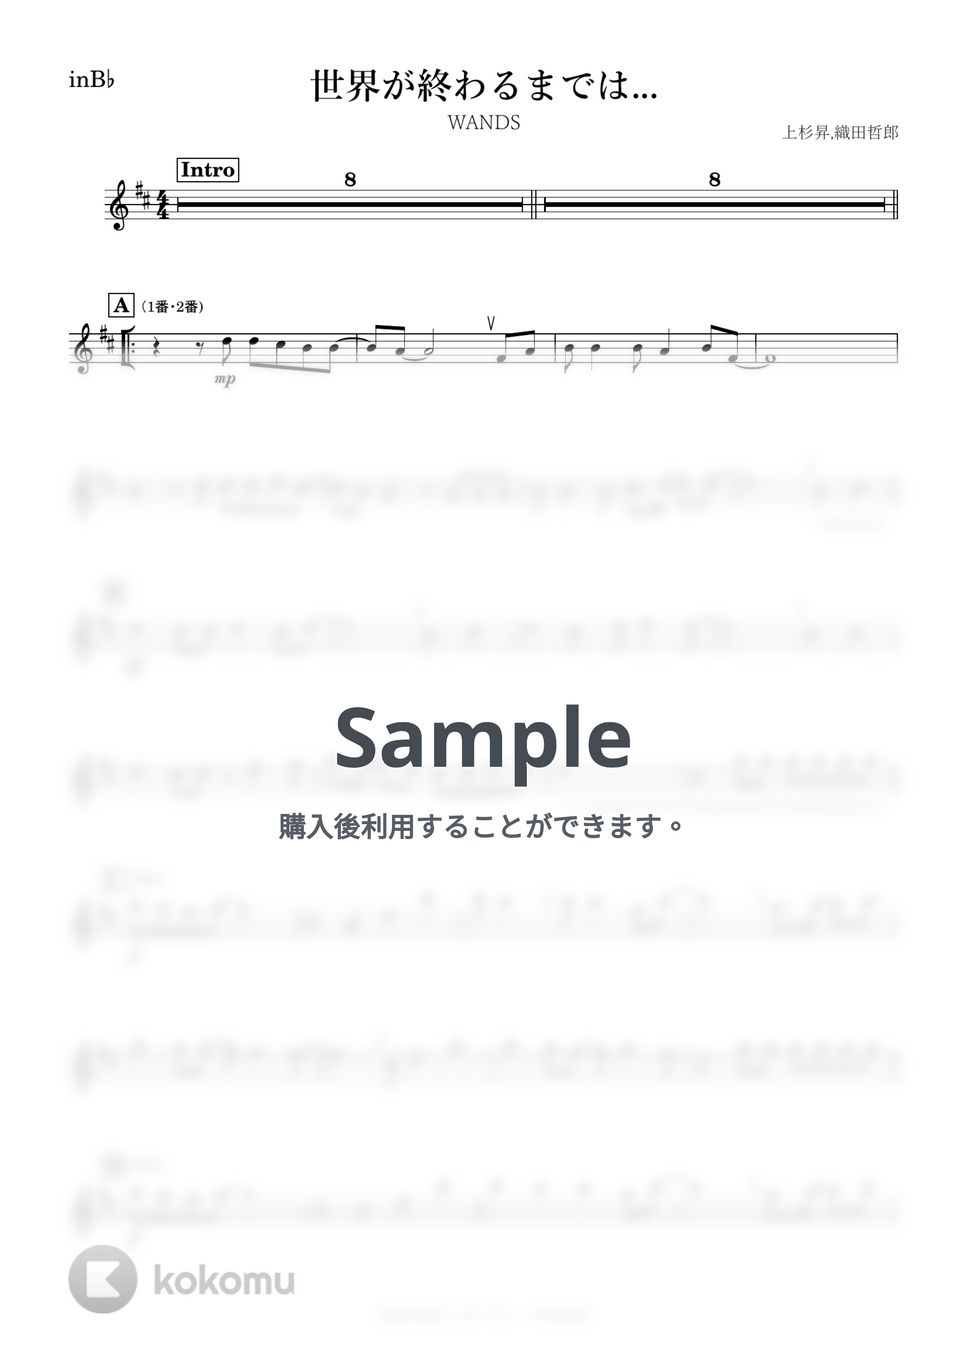 スラムダンク - 世界が終るまでは... (B♭) by kanamusic